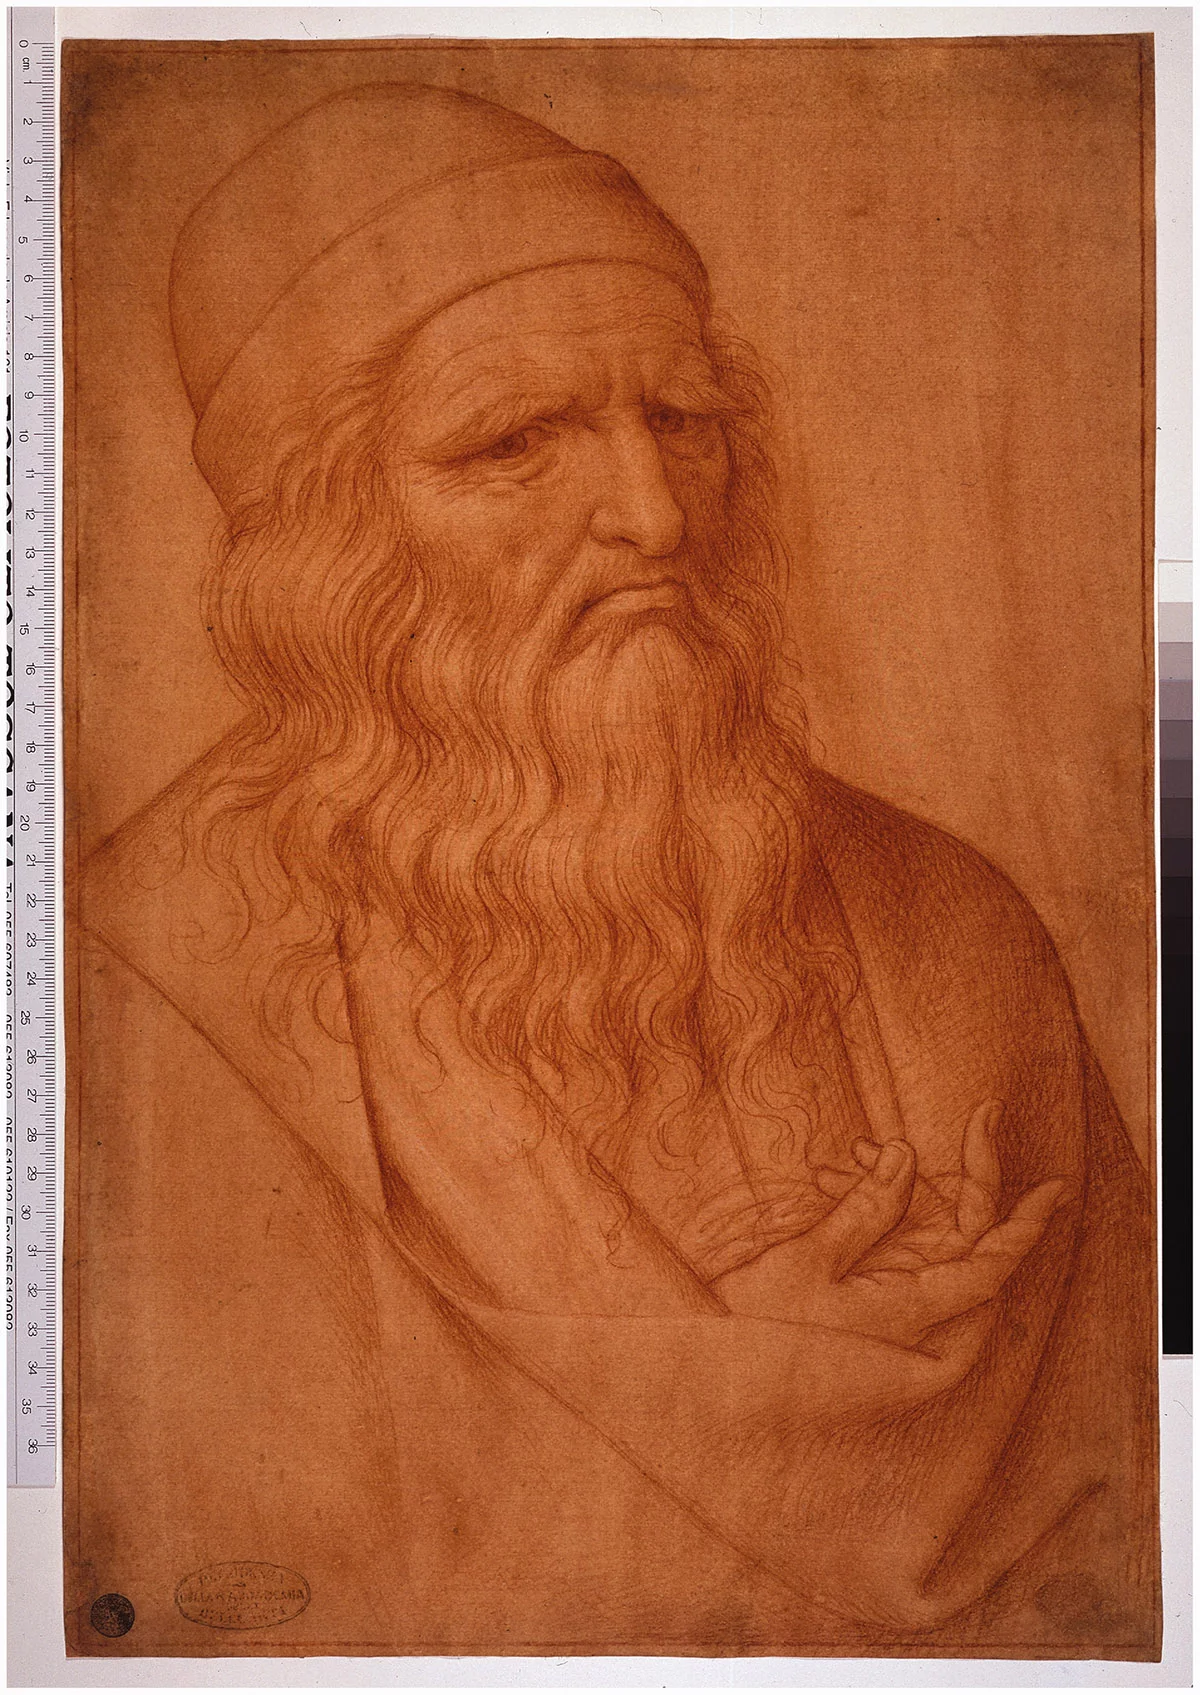 <p>Портрет Леонардо да Винчи, дата неизвестна (XVI век), Джованни Амброджо Фигино, рисунок красным мелом или сангиной, 41,6&thinsp;&times;&thinsp;28,2&thinsp;см (16,3&thinsp;&times;&thinsp;11,1 дюйма)</p>